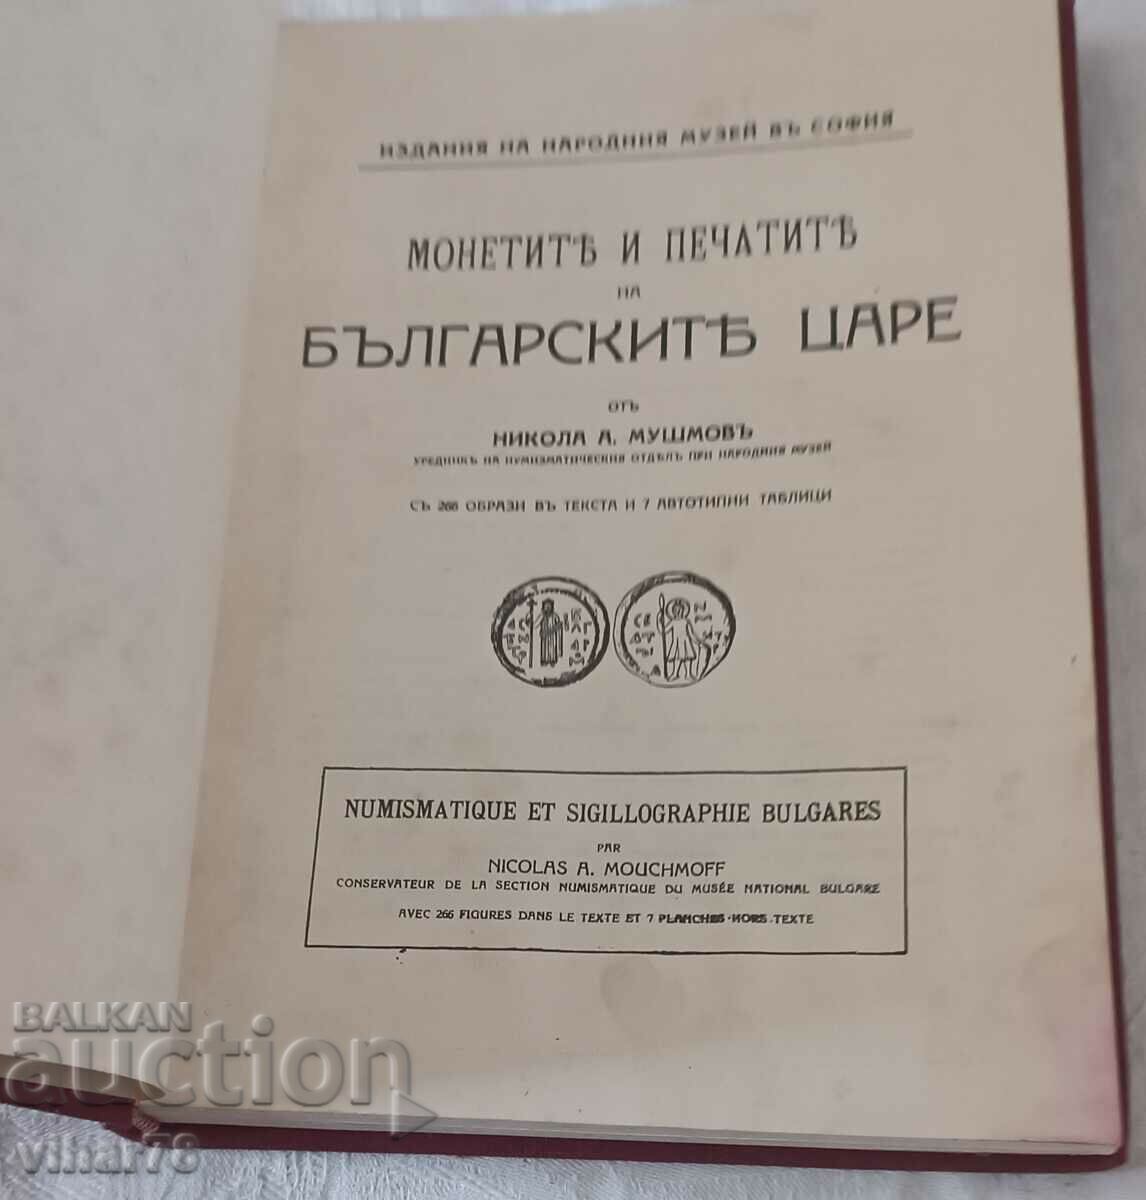 Стара Книга Монети и Печати на Българските Царе